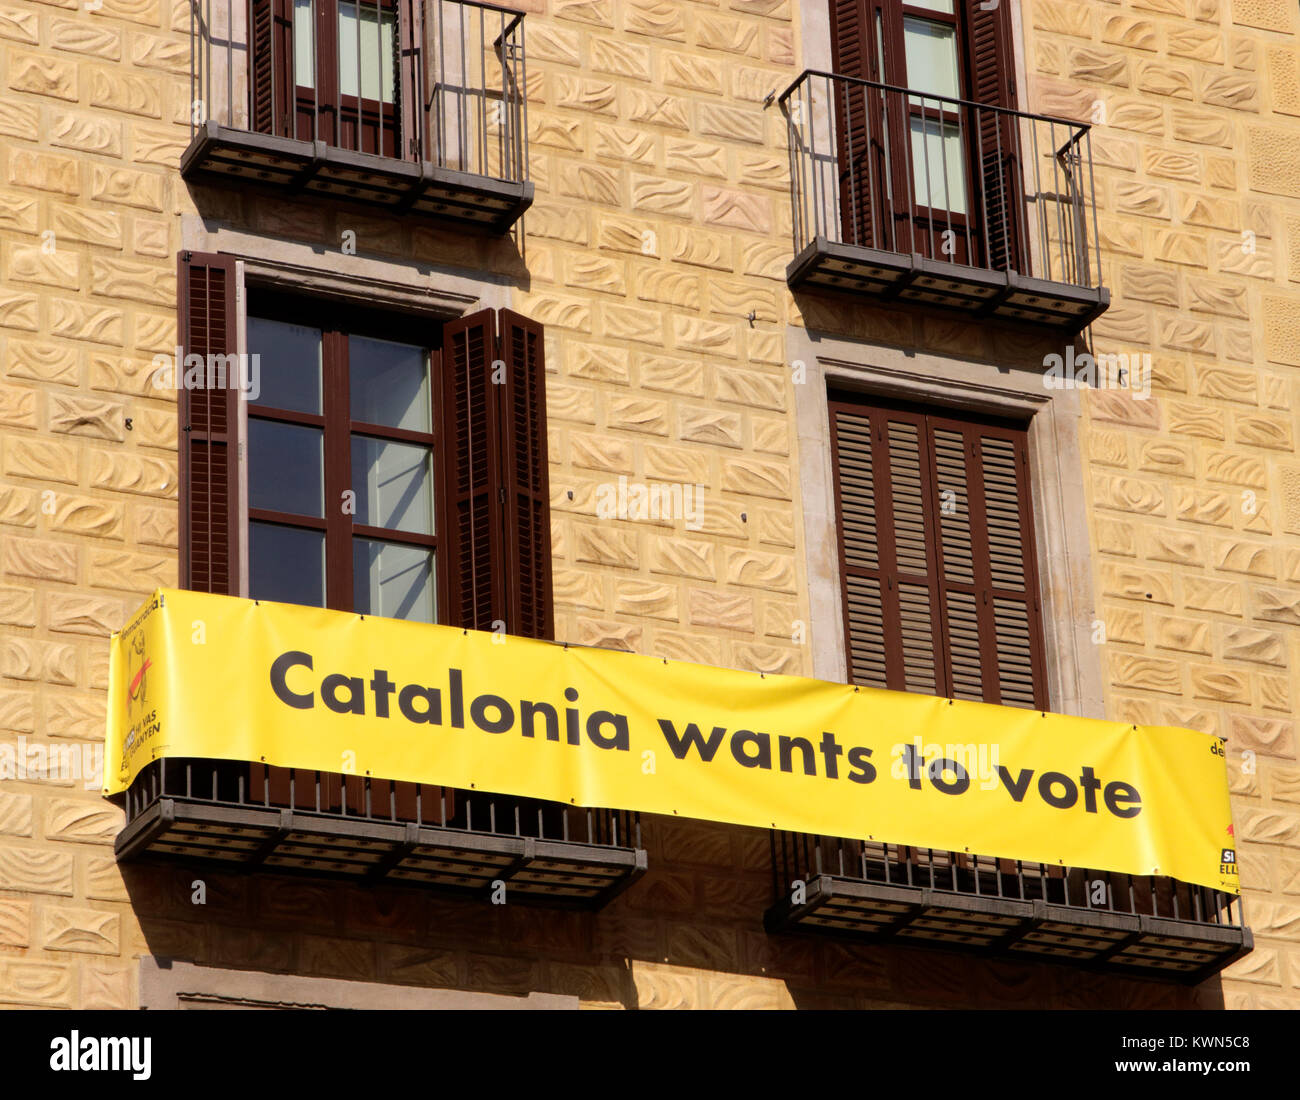 La Catalogna vuole votare Banner in Plaça Sant Jaume Barcellona re referendum di indipendenza Ottobre 2017 Foto Stock